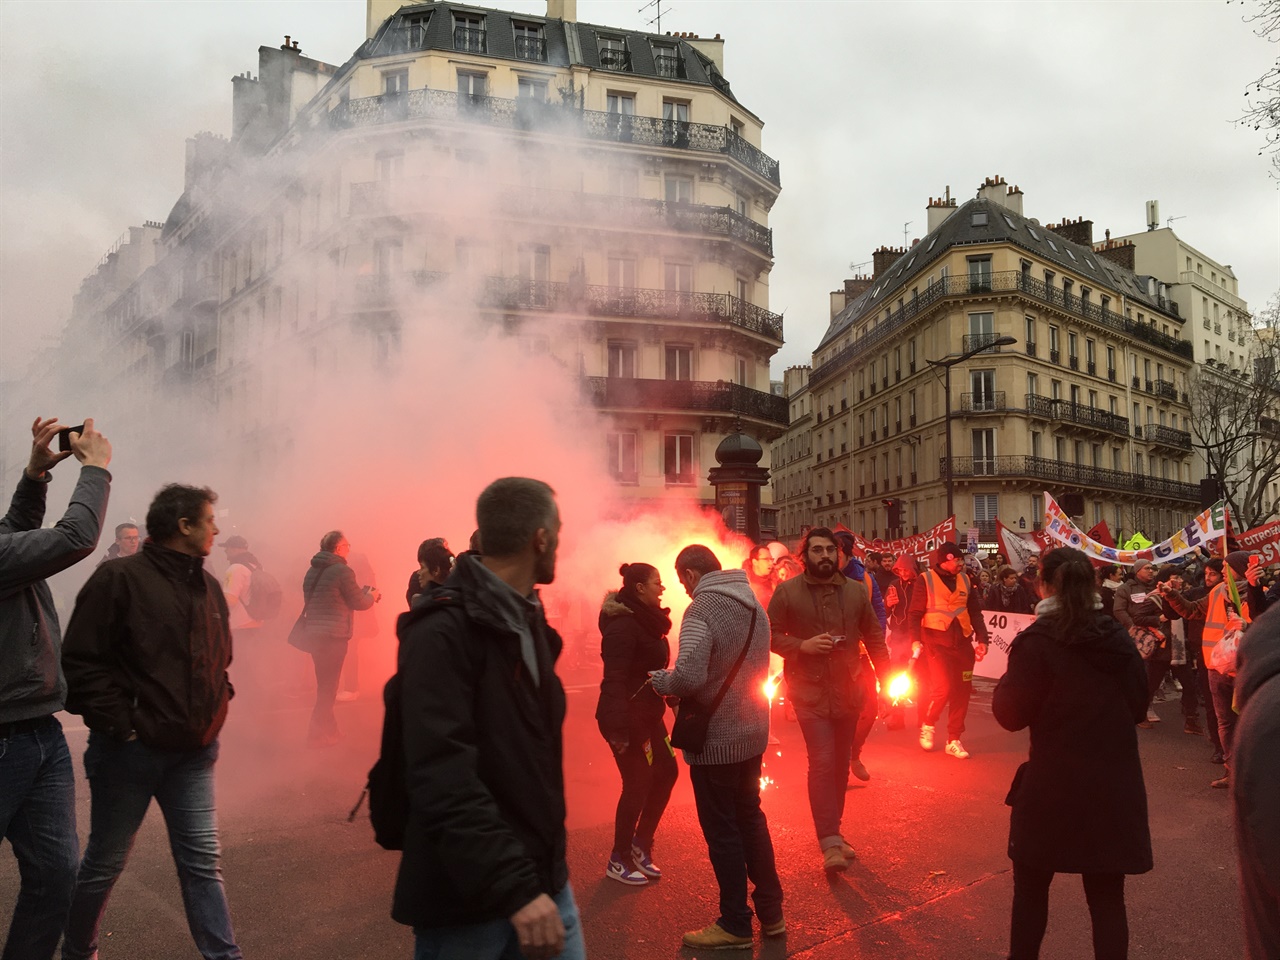 2020년 1월9일 파리에서 열린 연금개혁 반대 시위 현장. 시위대 주변으로 연막탄의 연기가 자욱하다. 